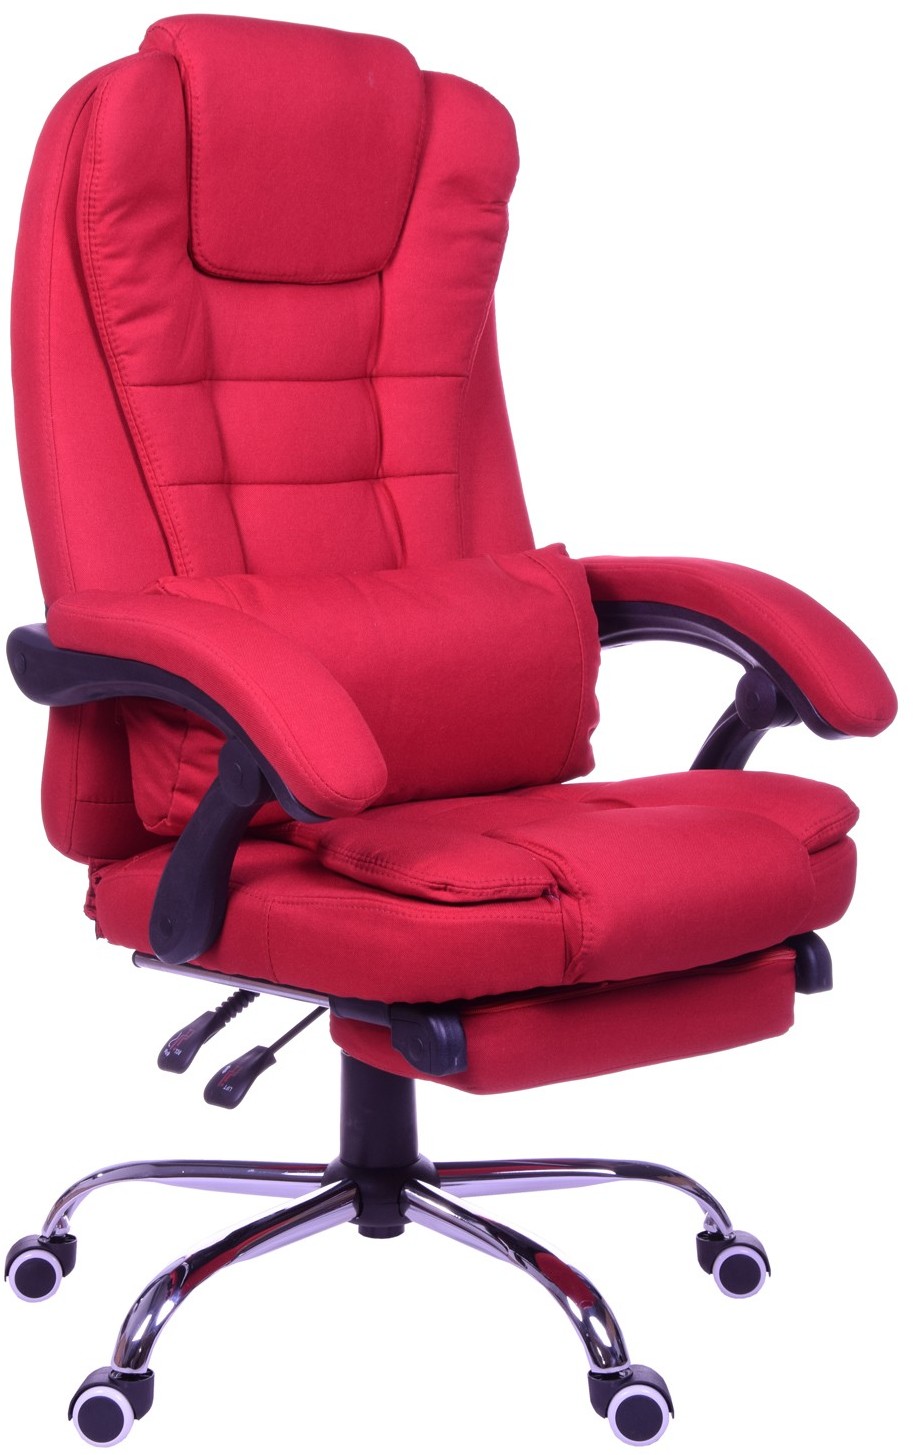 Zdjęcia - Fotel komputerowy Giosedio Fotel biurowy  czerwony, model FBR001 